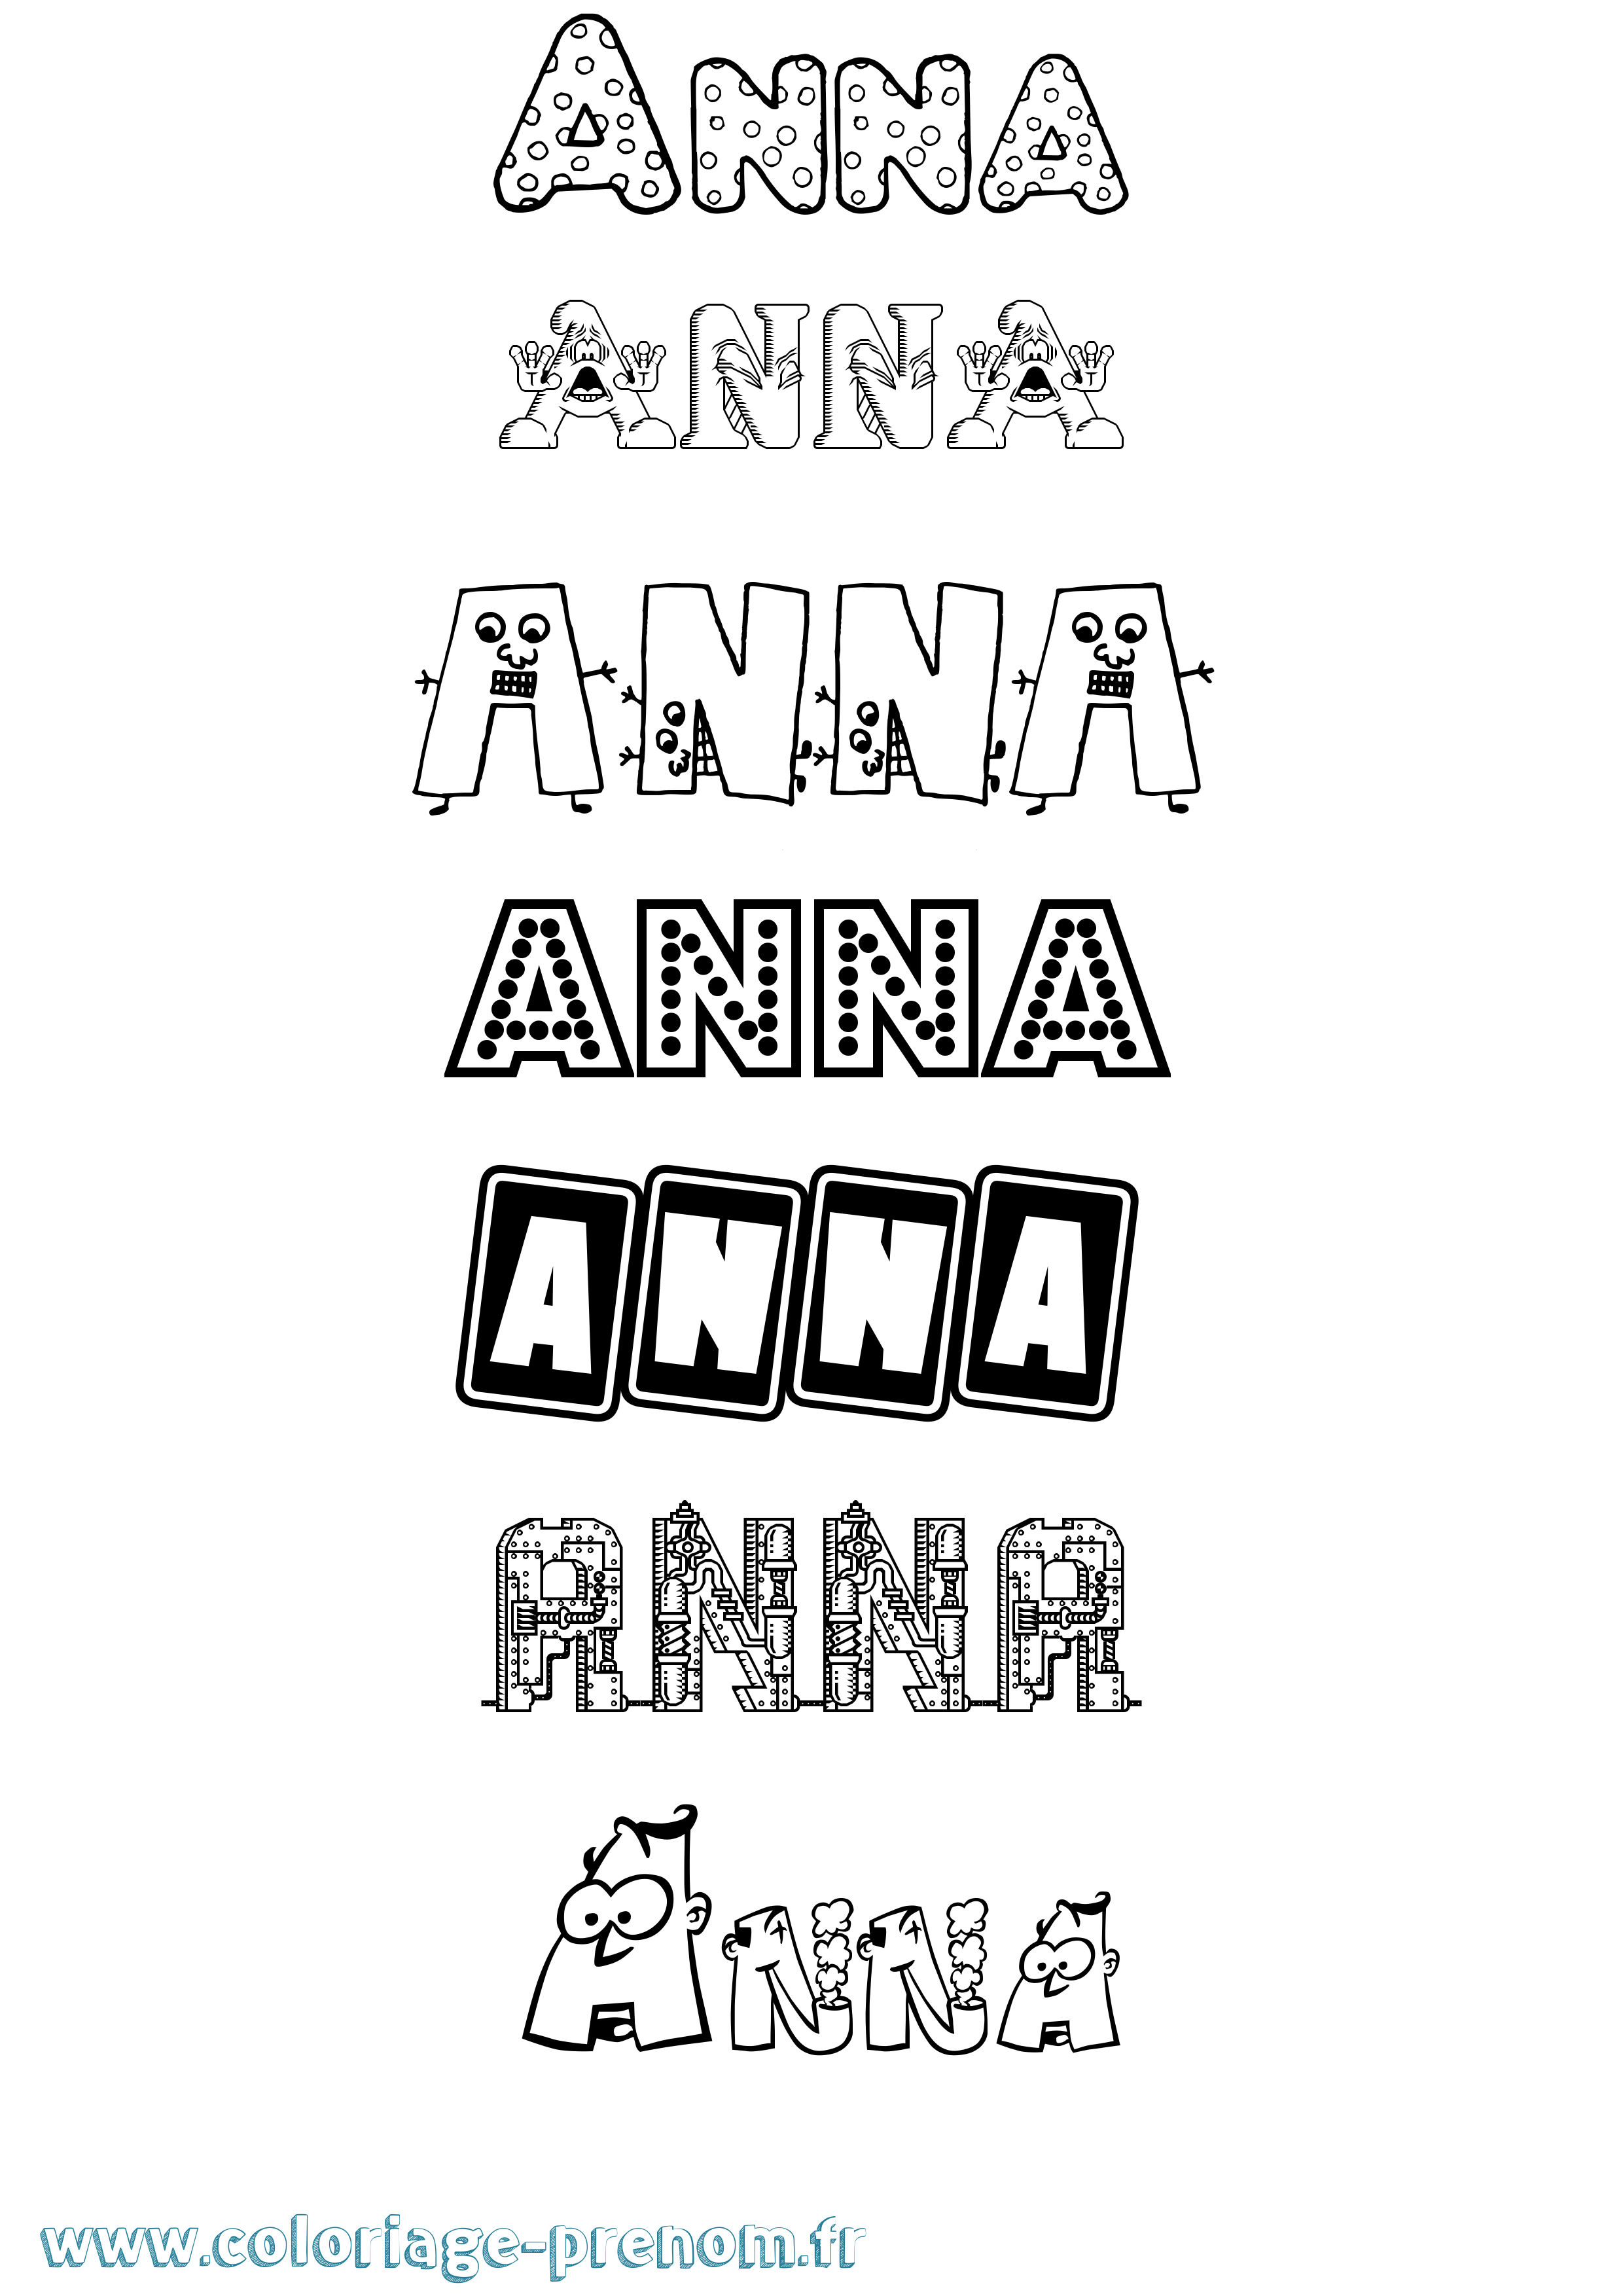 Coloriage prénom Anna Fun